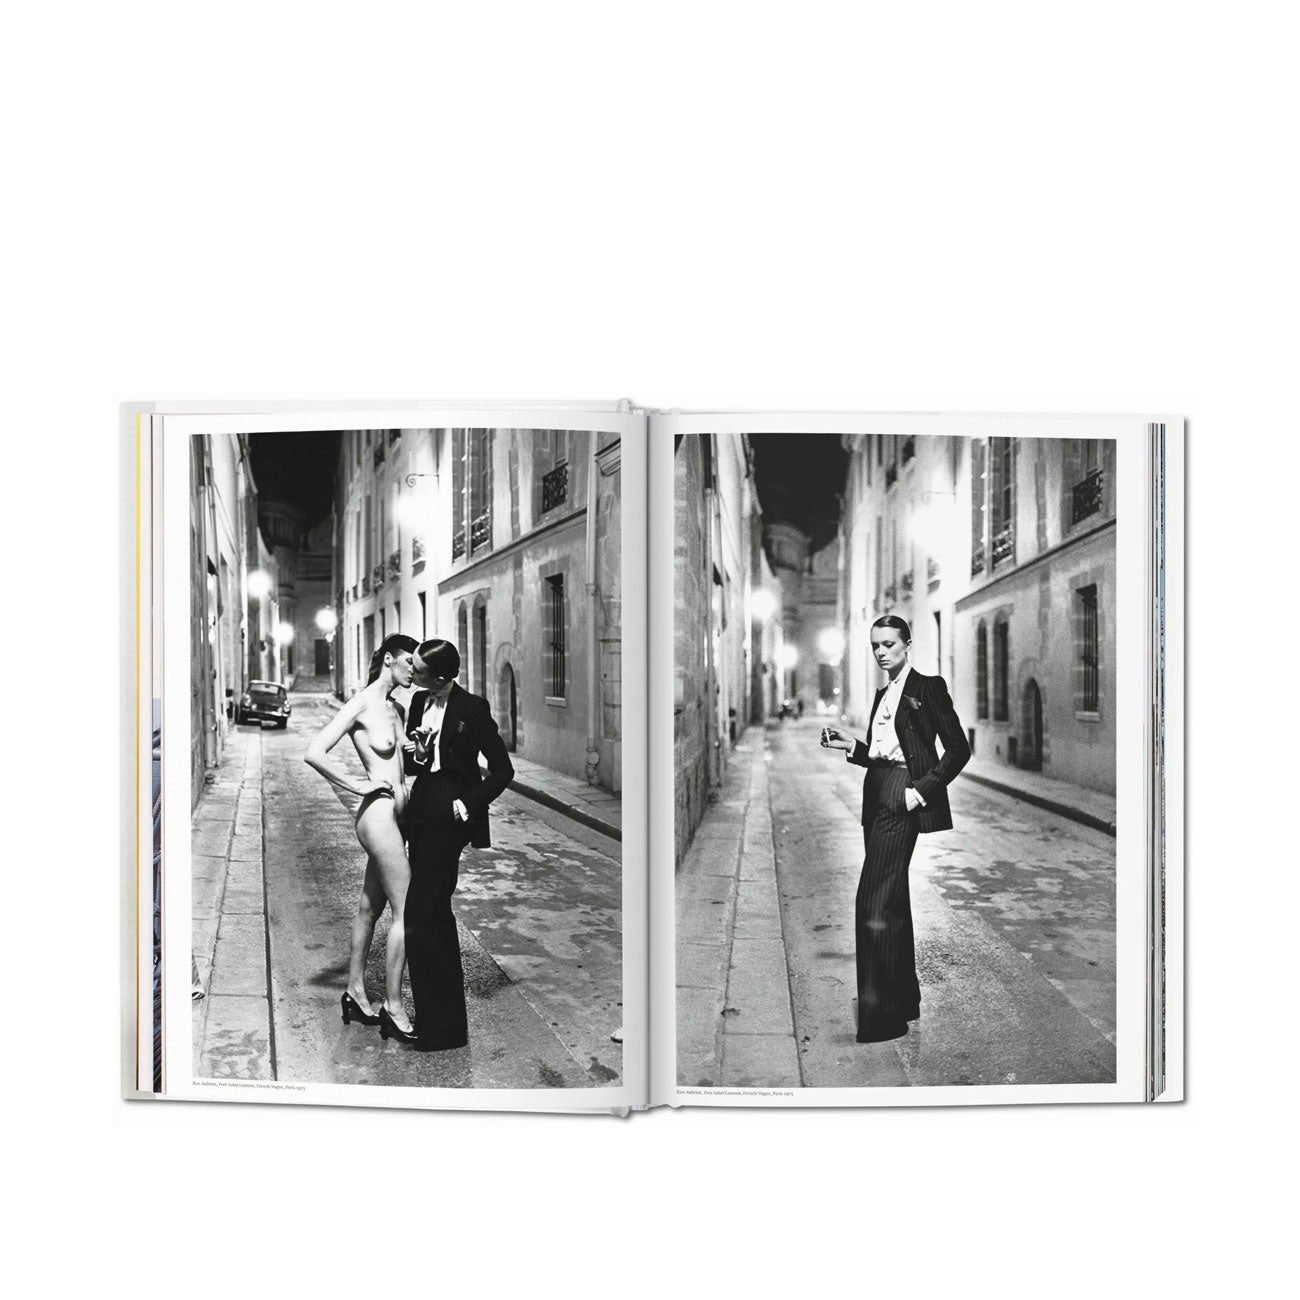 Taschen: Helmut Newton. SUMO. 20th Anniversary Edition XL  - Allike Store